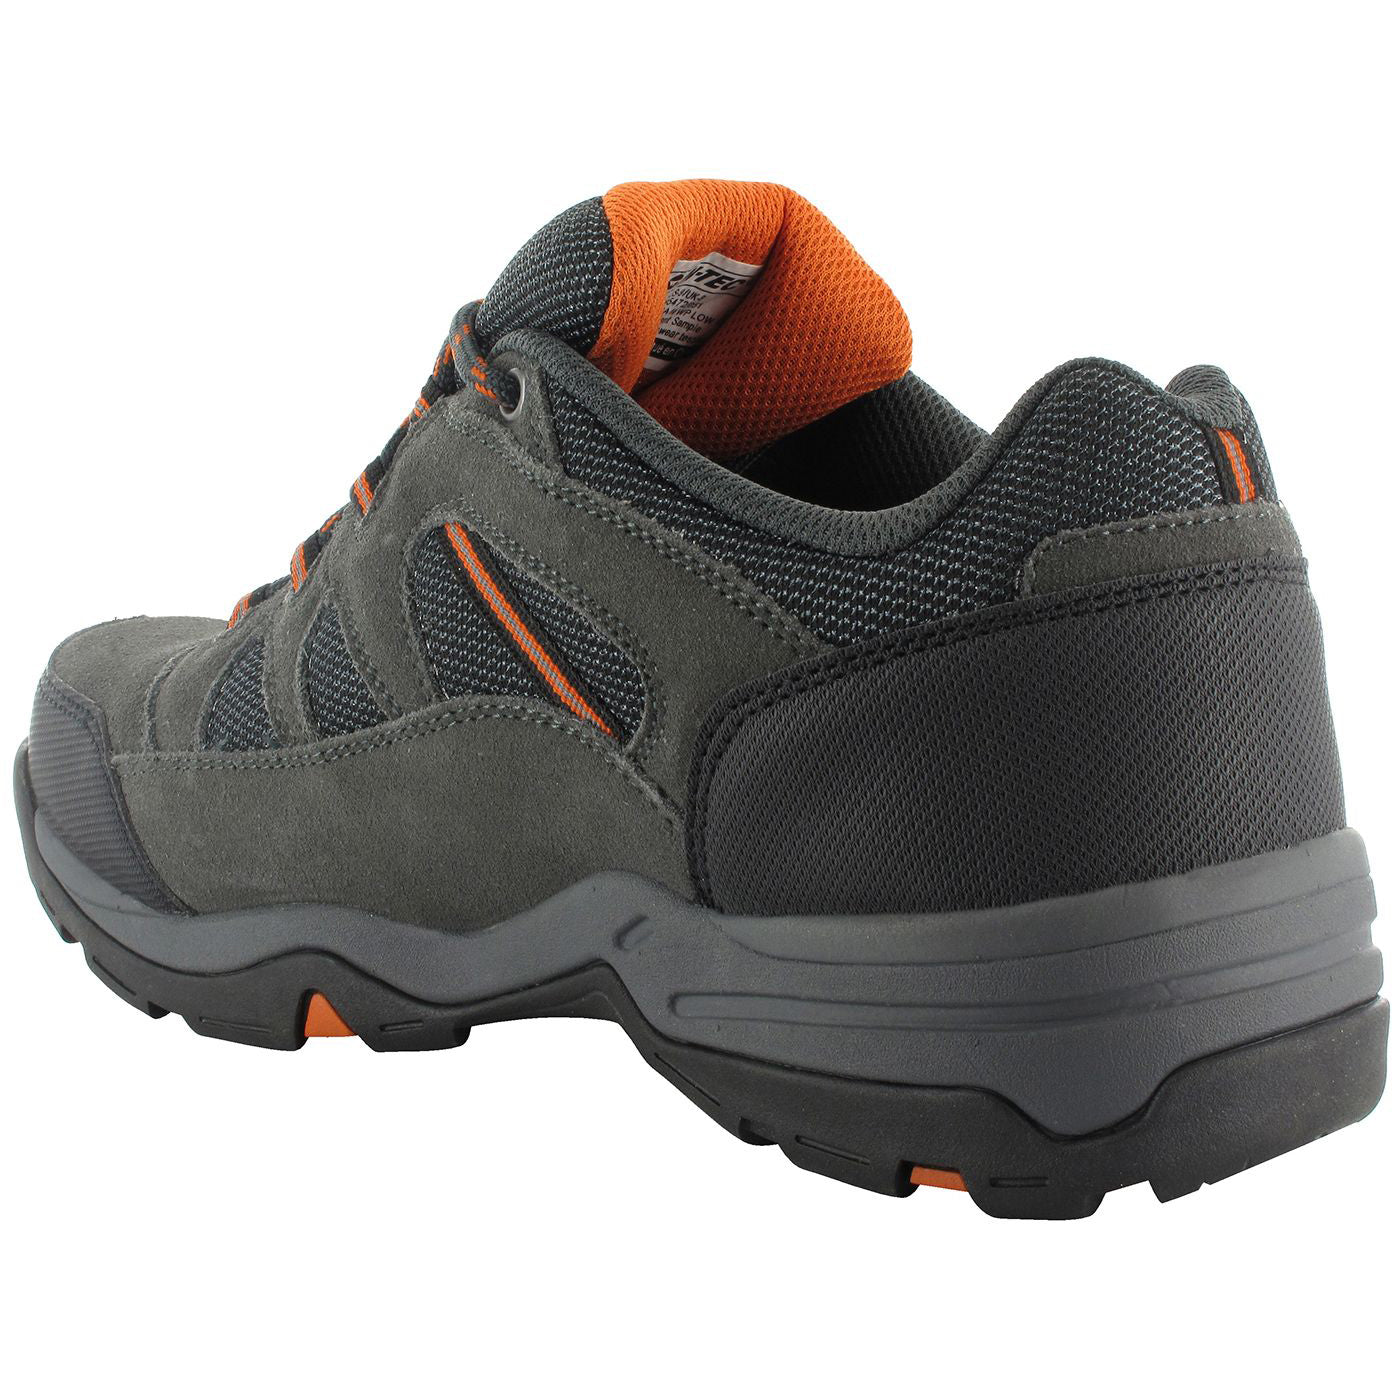 Hi-Tec Bandera II Low Waterproof Walking Shoe | Men's Walking Shoes ...